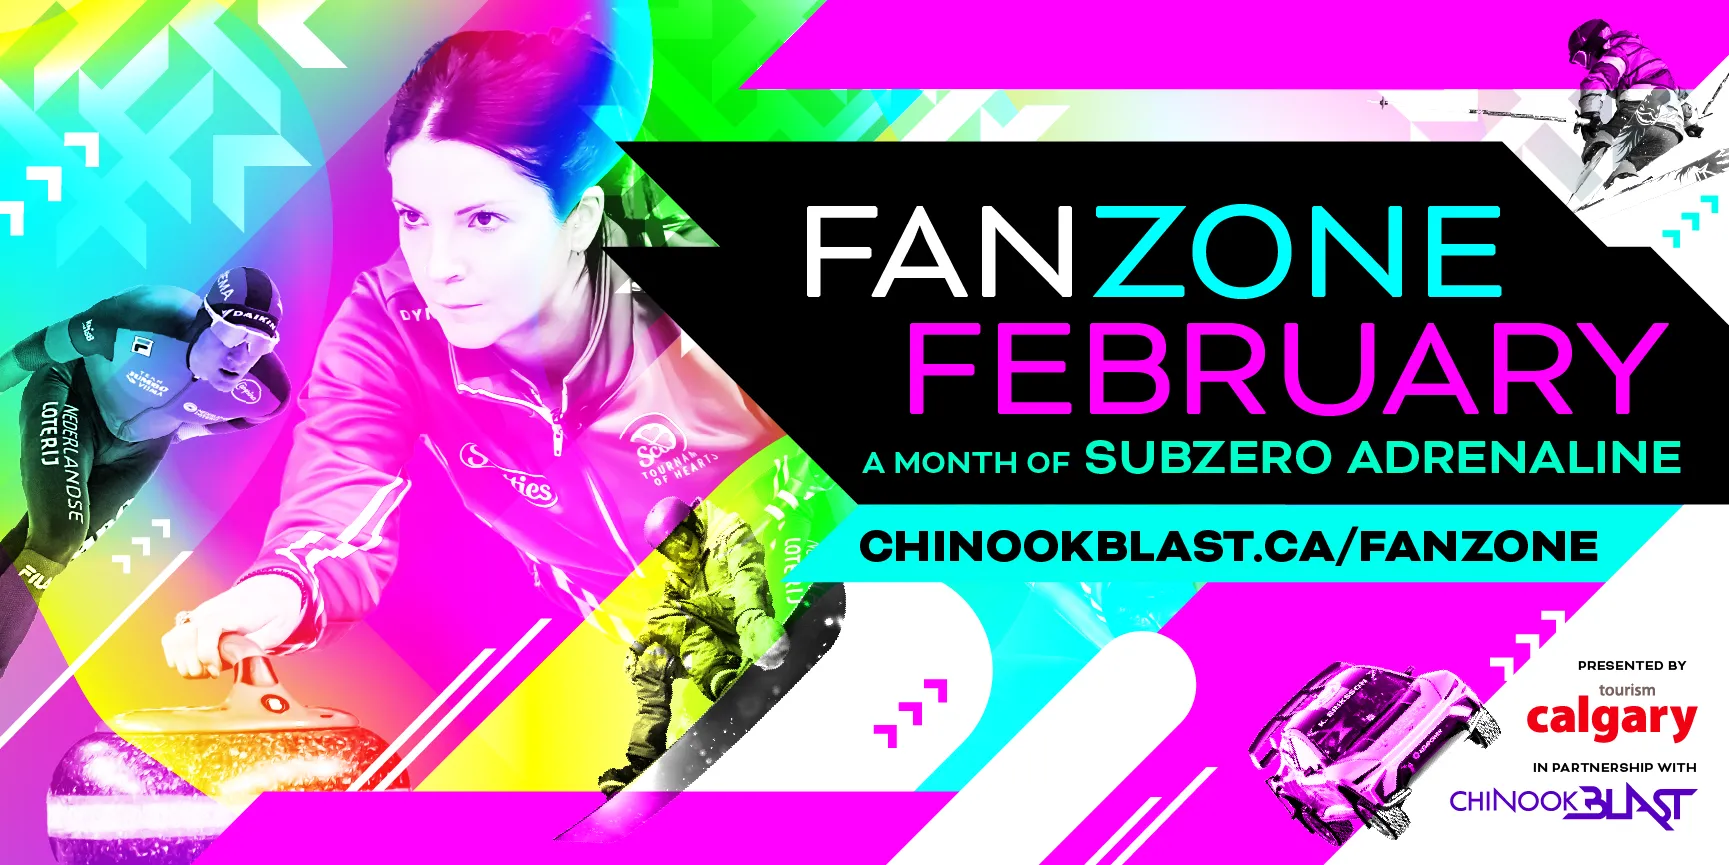 Fan Zone February